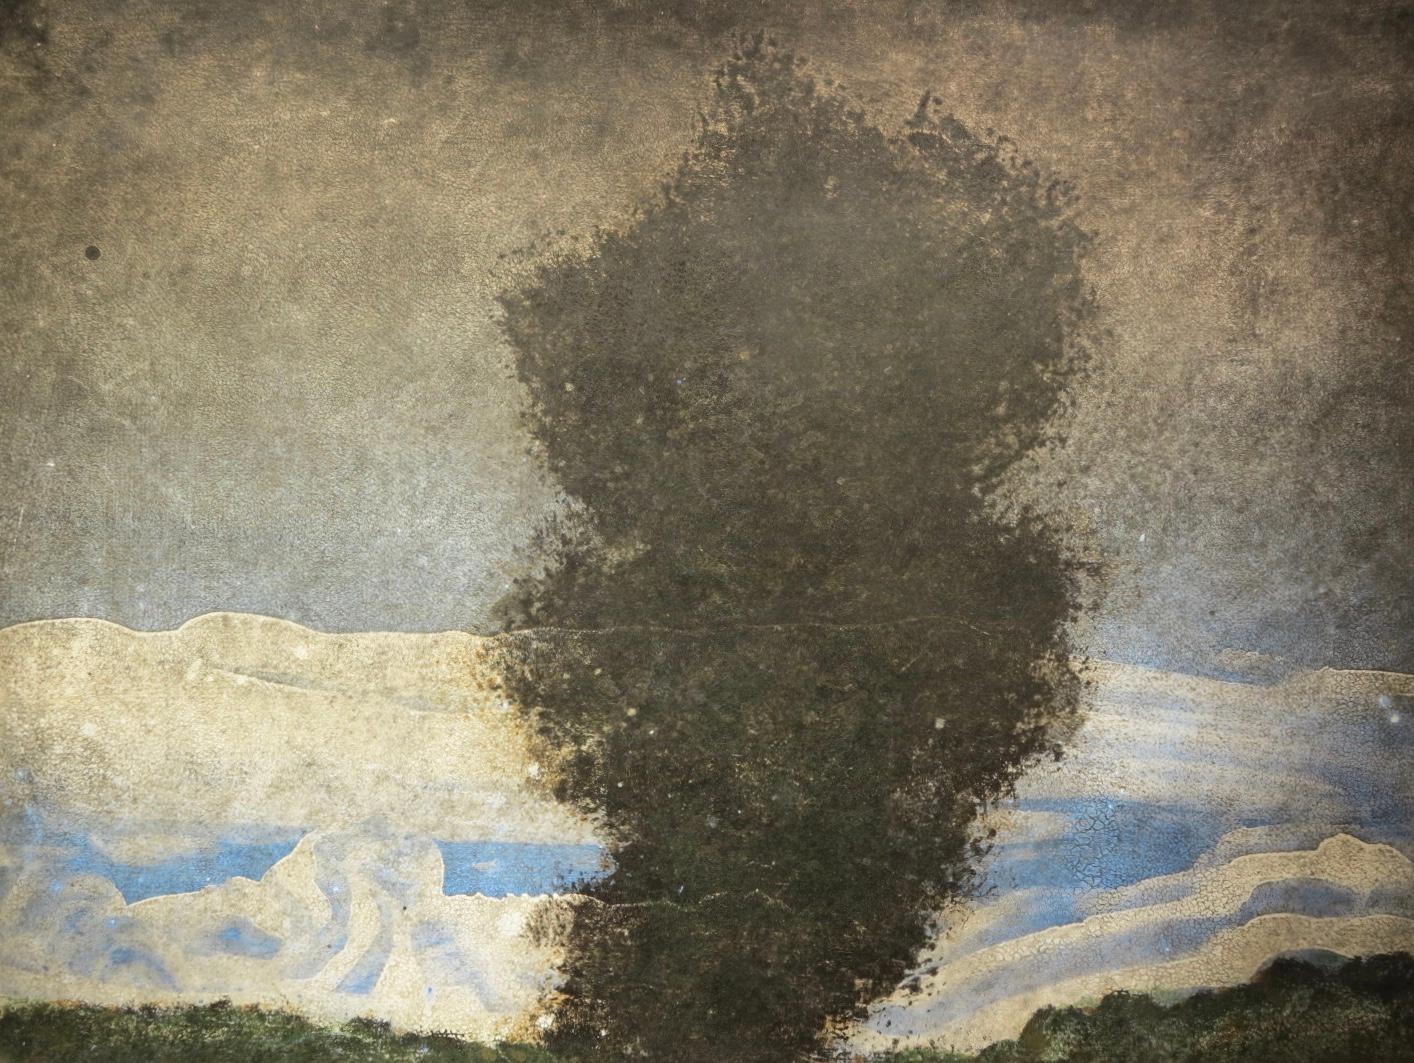 Frank Faulkner Landscape Painting - Obscured Landscape #1 (abstract landscape)